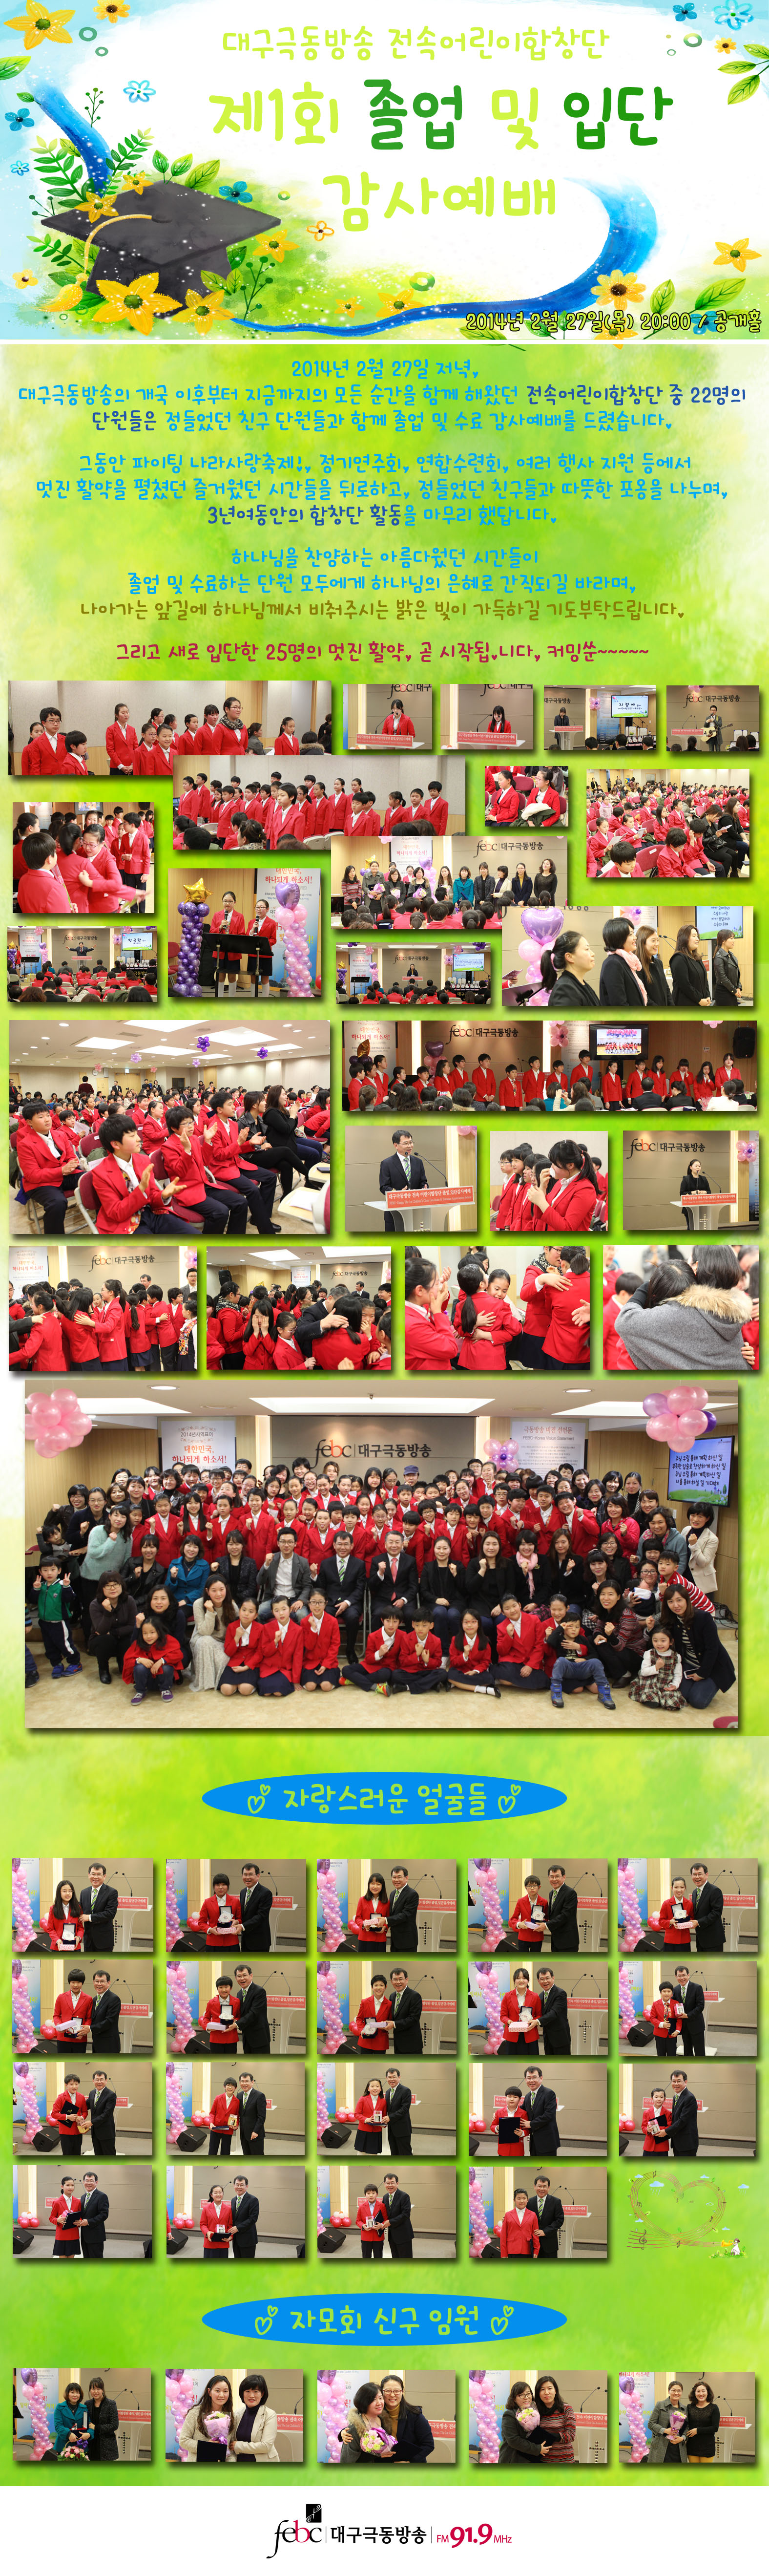 20140227(목) - 전속어린이합창단 제1회 졸업 및 입단 감사예배.jpg